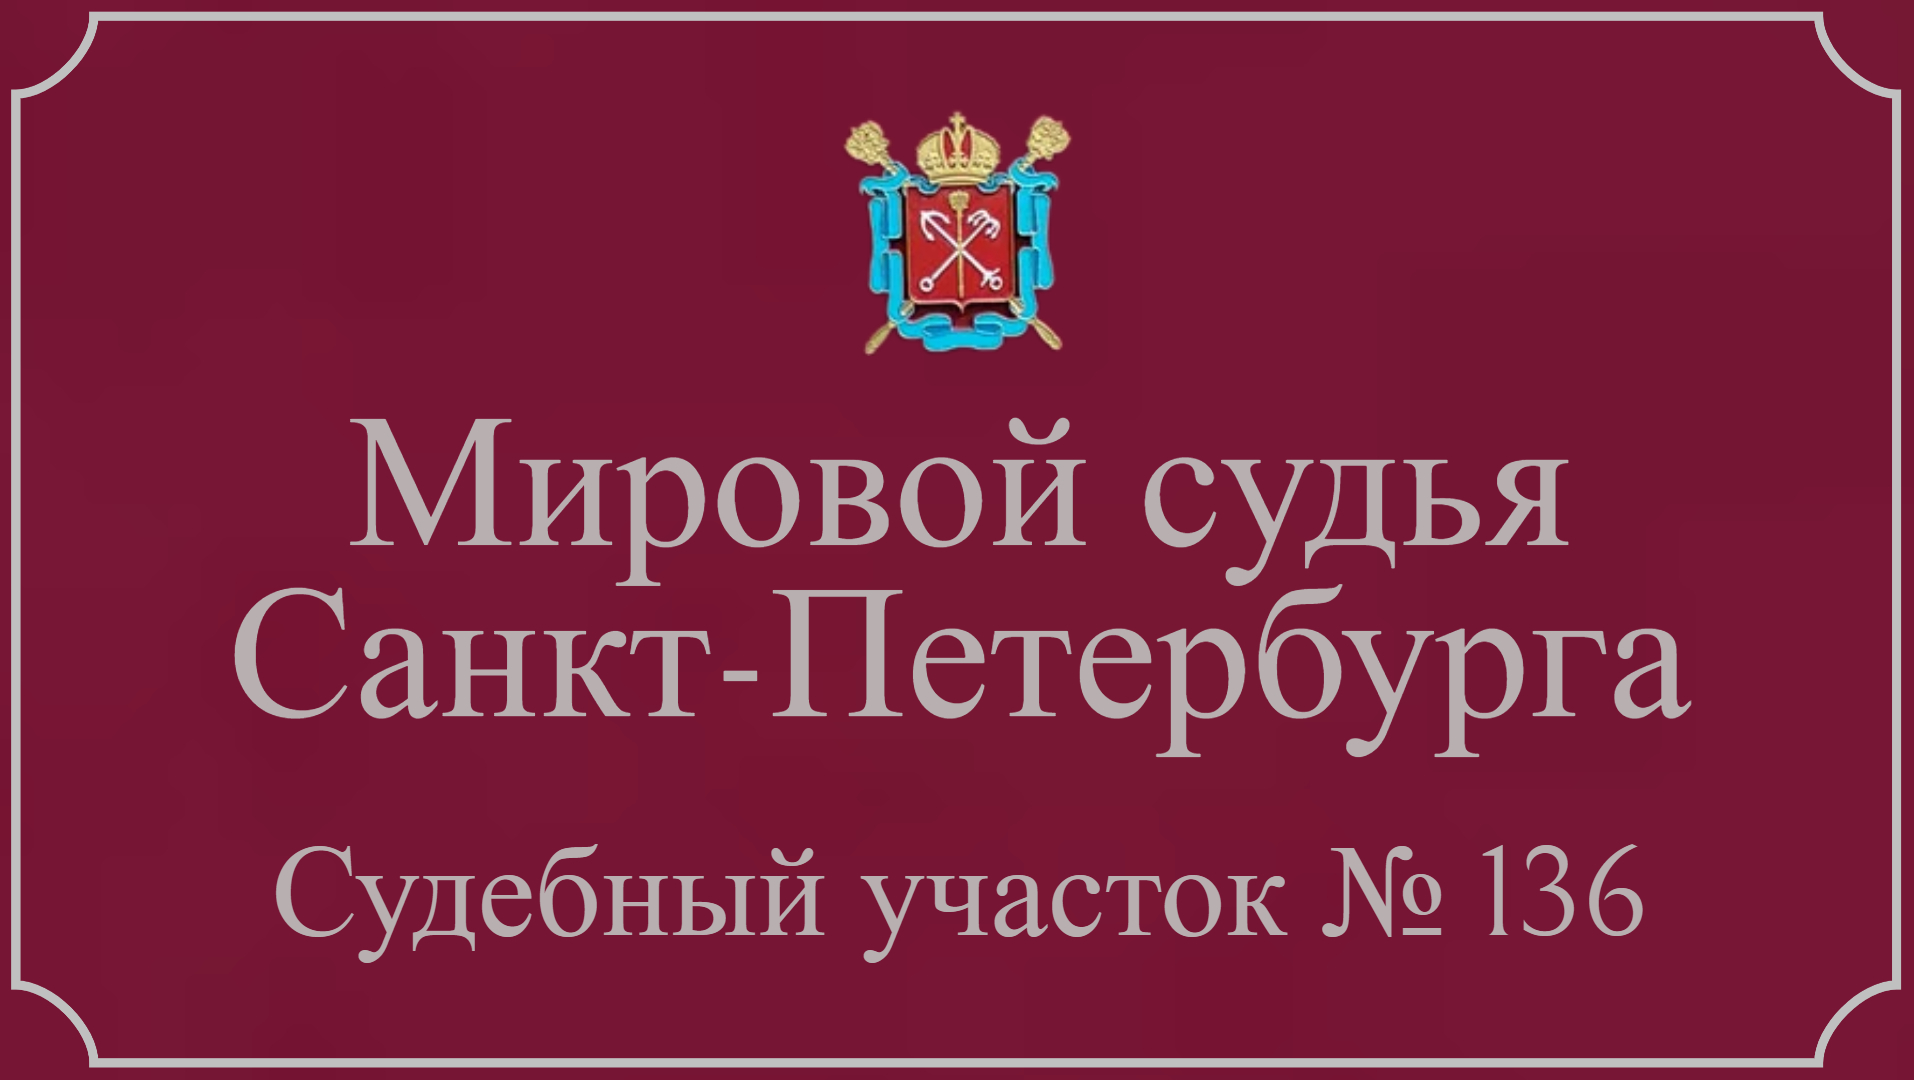 Информация по 136 судебному участку в Санкт-Петербурге.